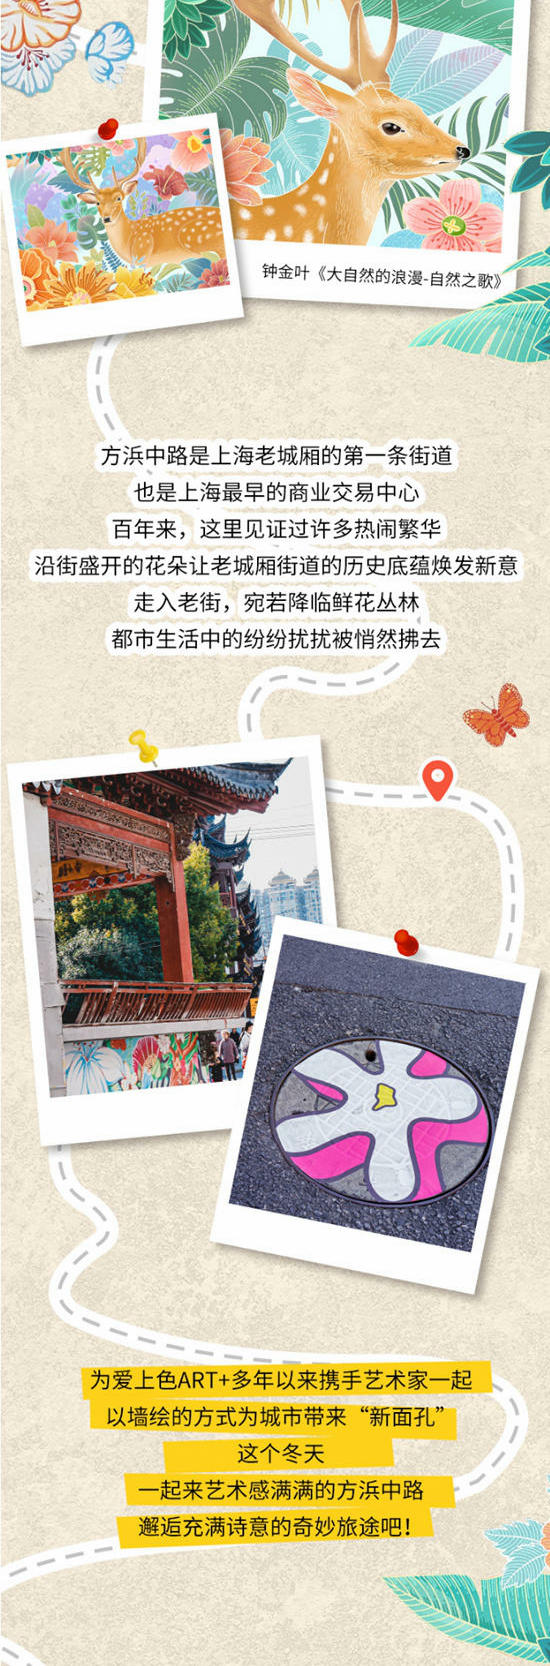 开启冬日寻花之旅，「为爱上色」打造上海“外滩花街”